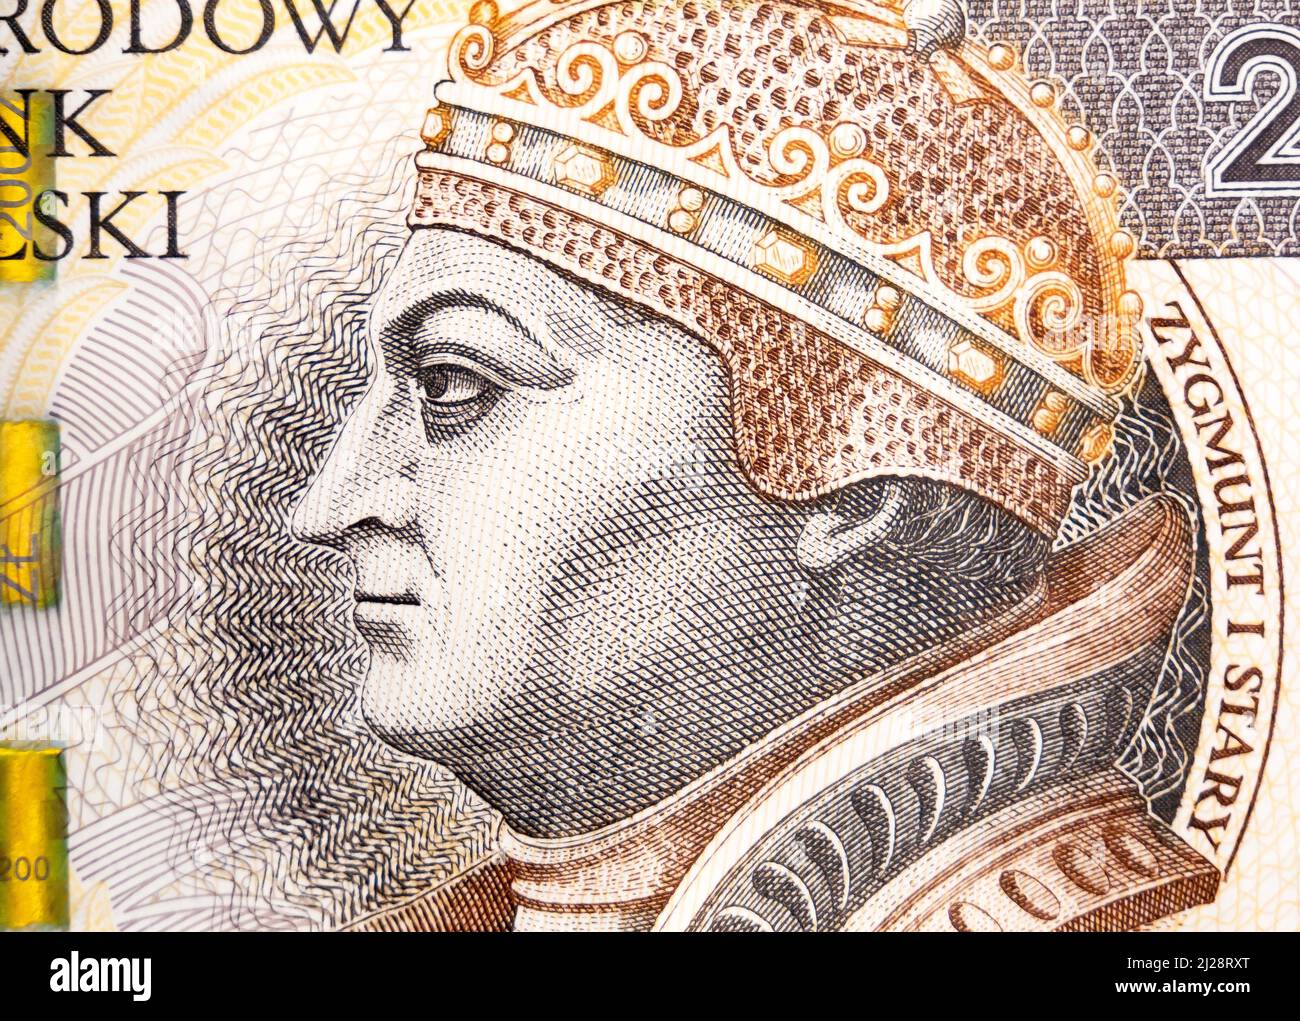 Monnaie polonaise, PLN, 200 zł, deux cents zloty bill macro, très gros plan détail Zygmunt i Stary face sur une note de banque vue de dessus, billet de banque Banque D'Images